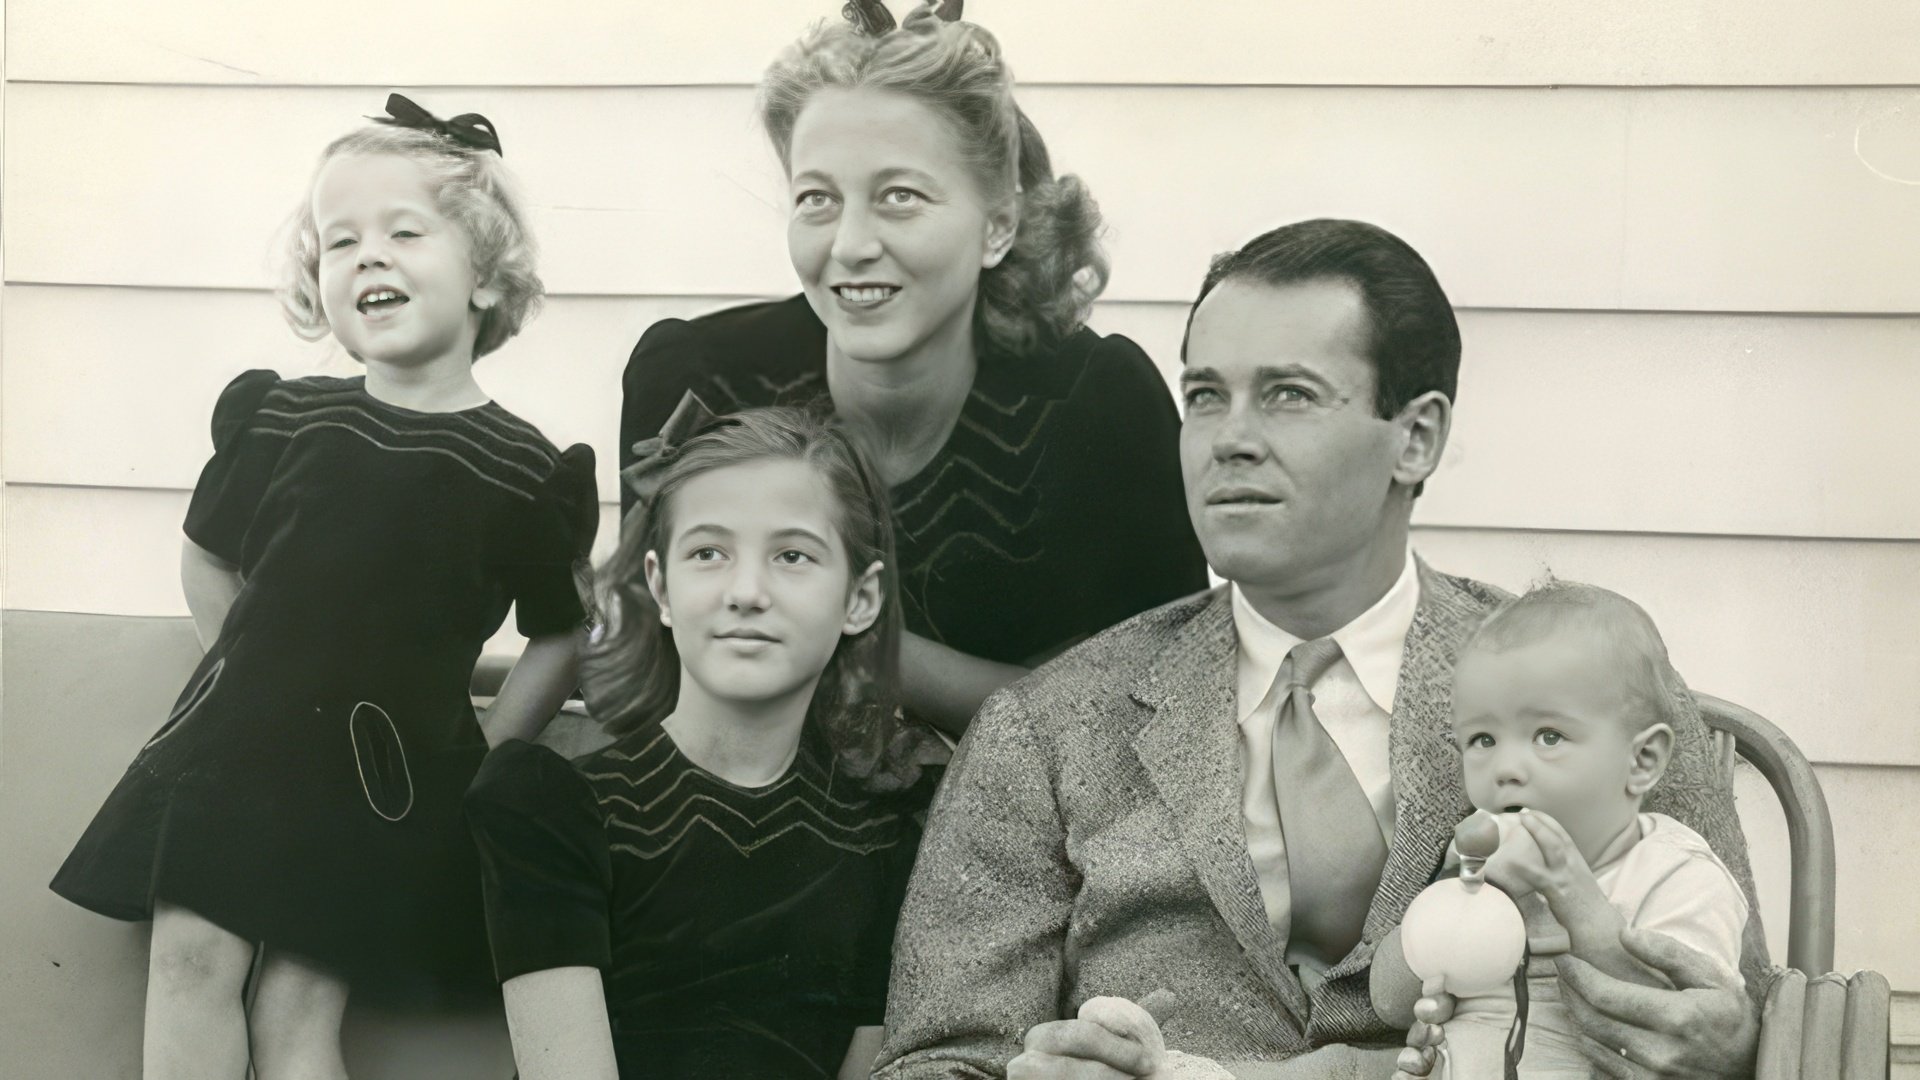 Jane Fonda (left) and her family